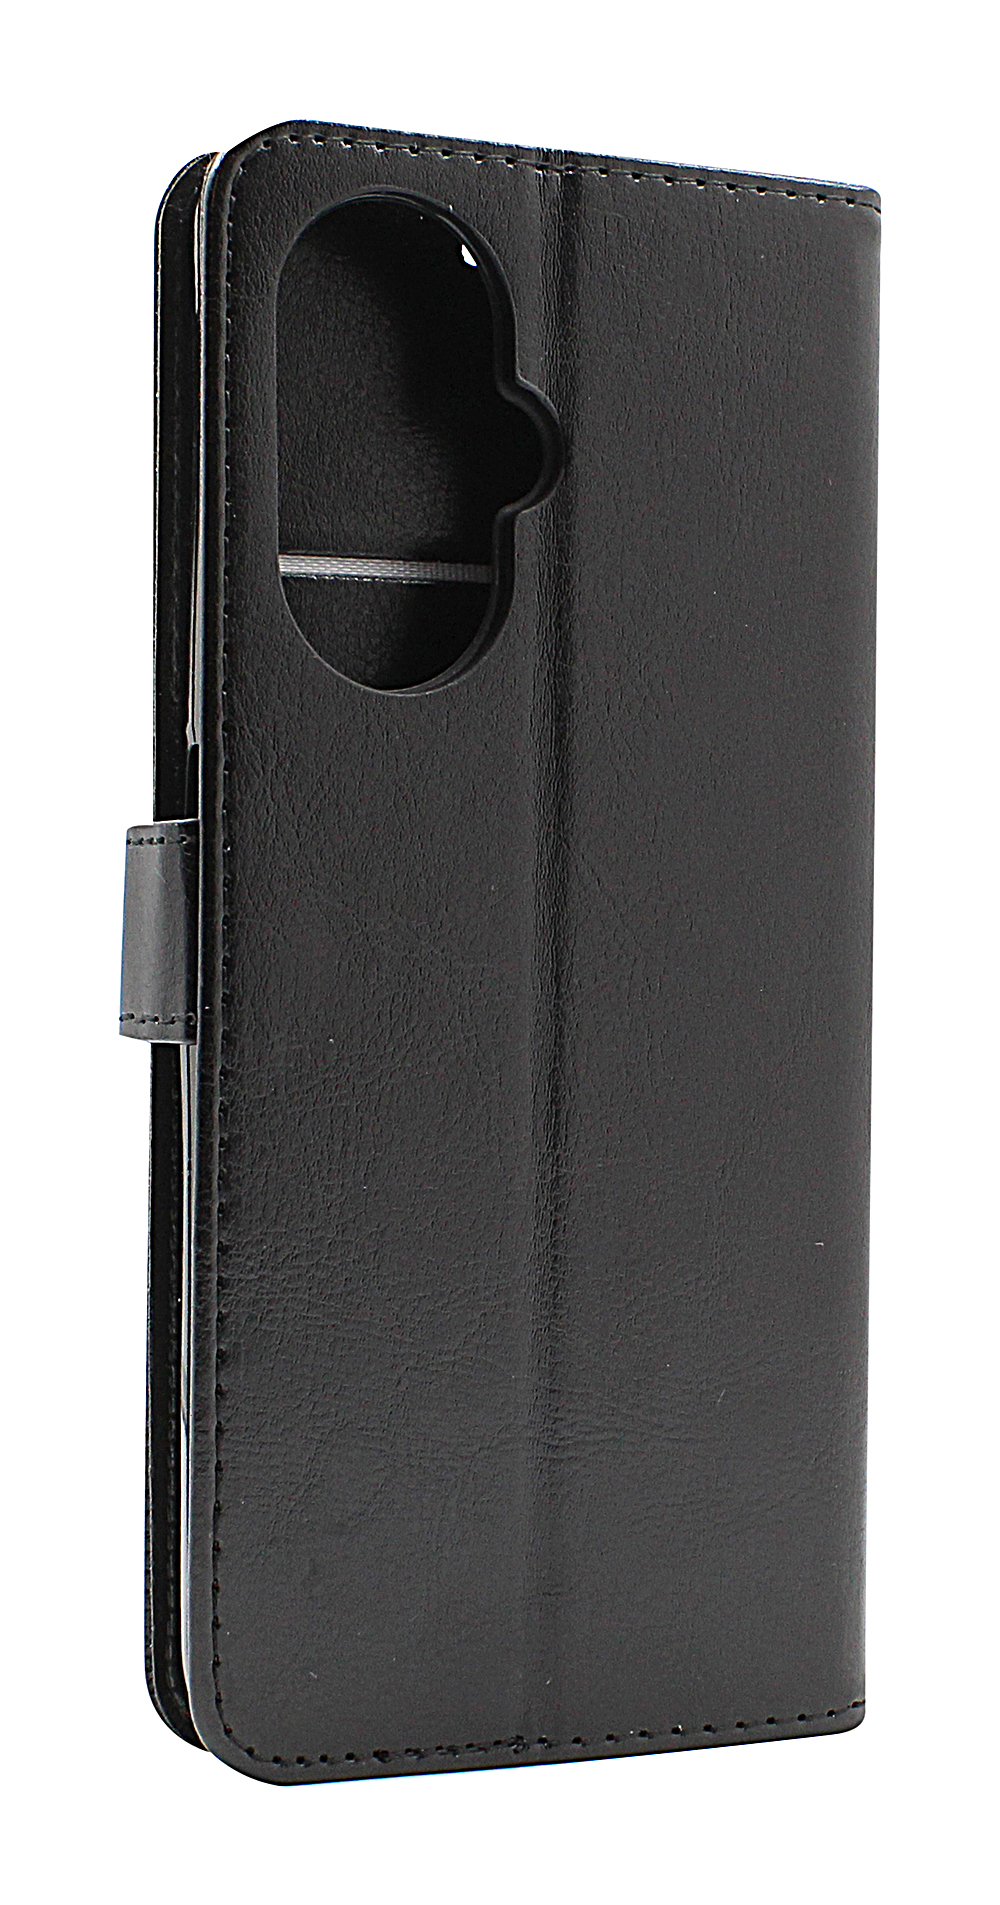 billigamobilskydd.seCrazy Horse Wallet OnePlus Nord CE 3 Lite 5G